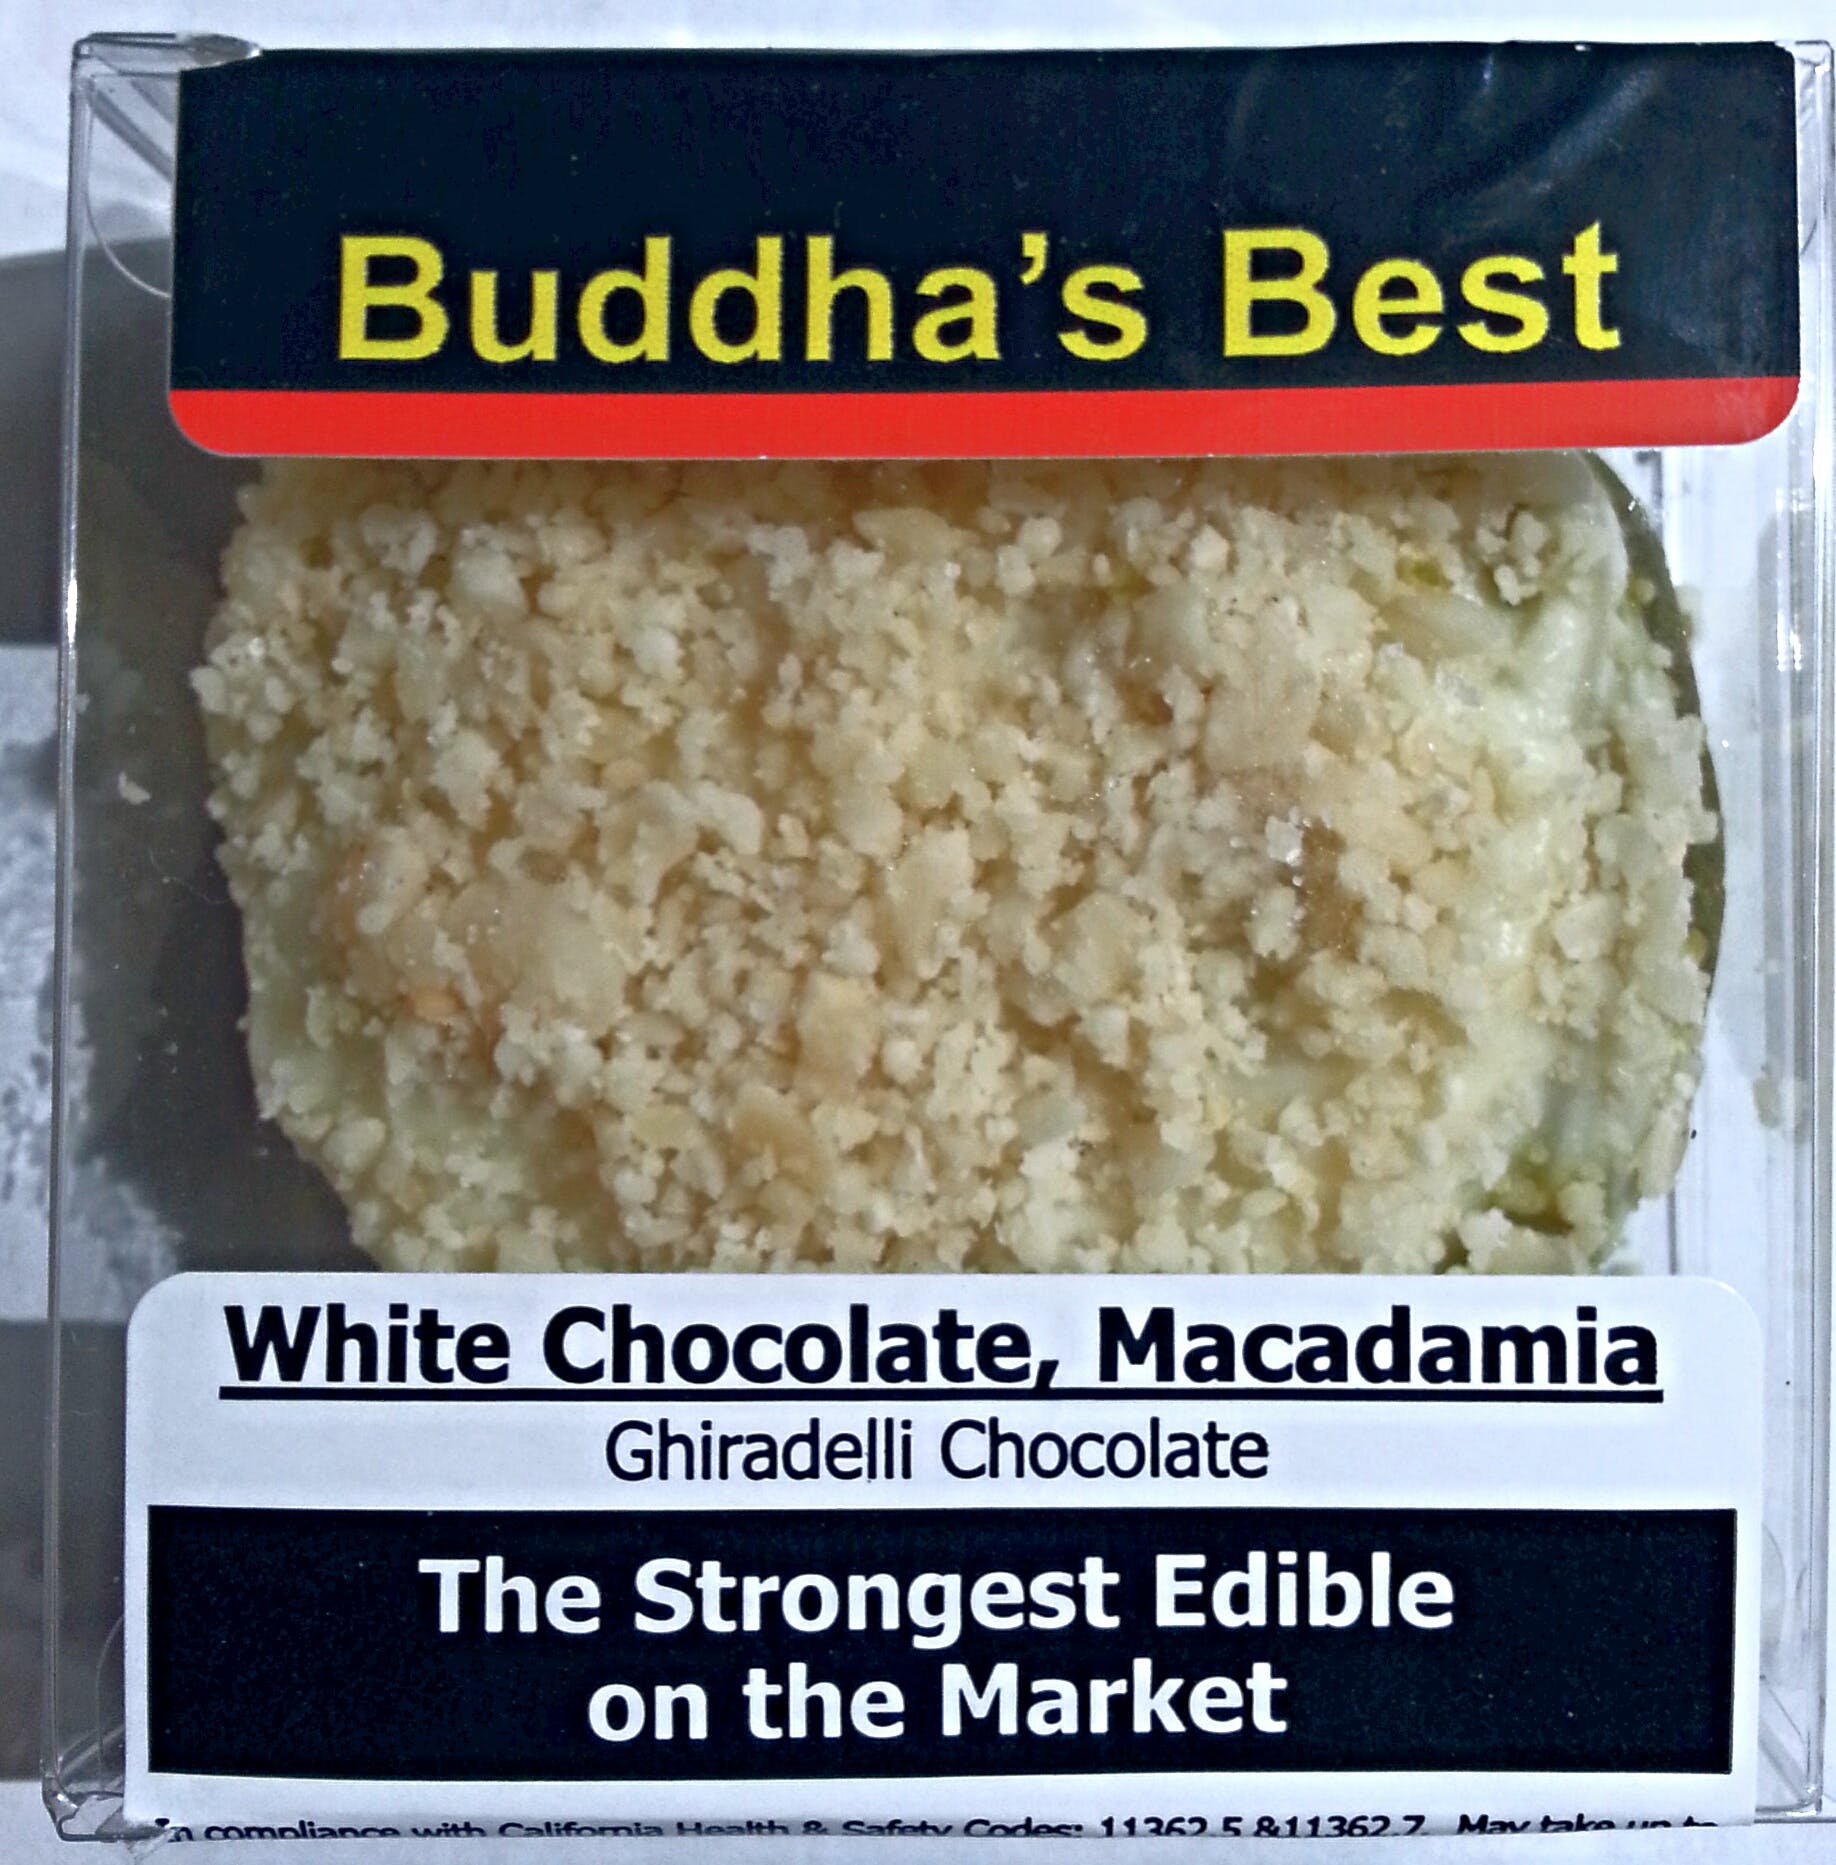 edible-buddhas-best-300-mg-white-chocolate-macadamia